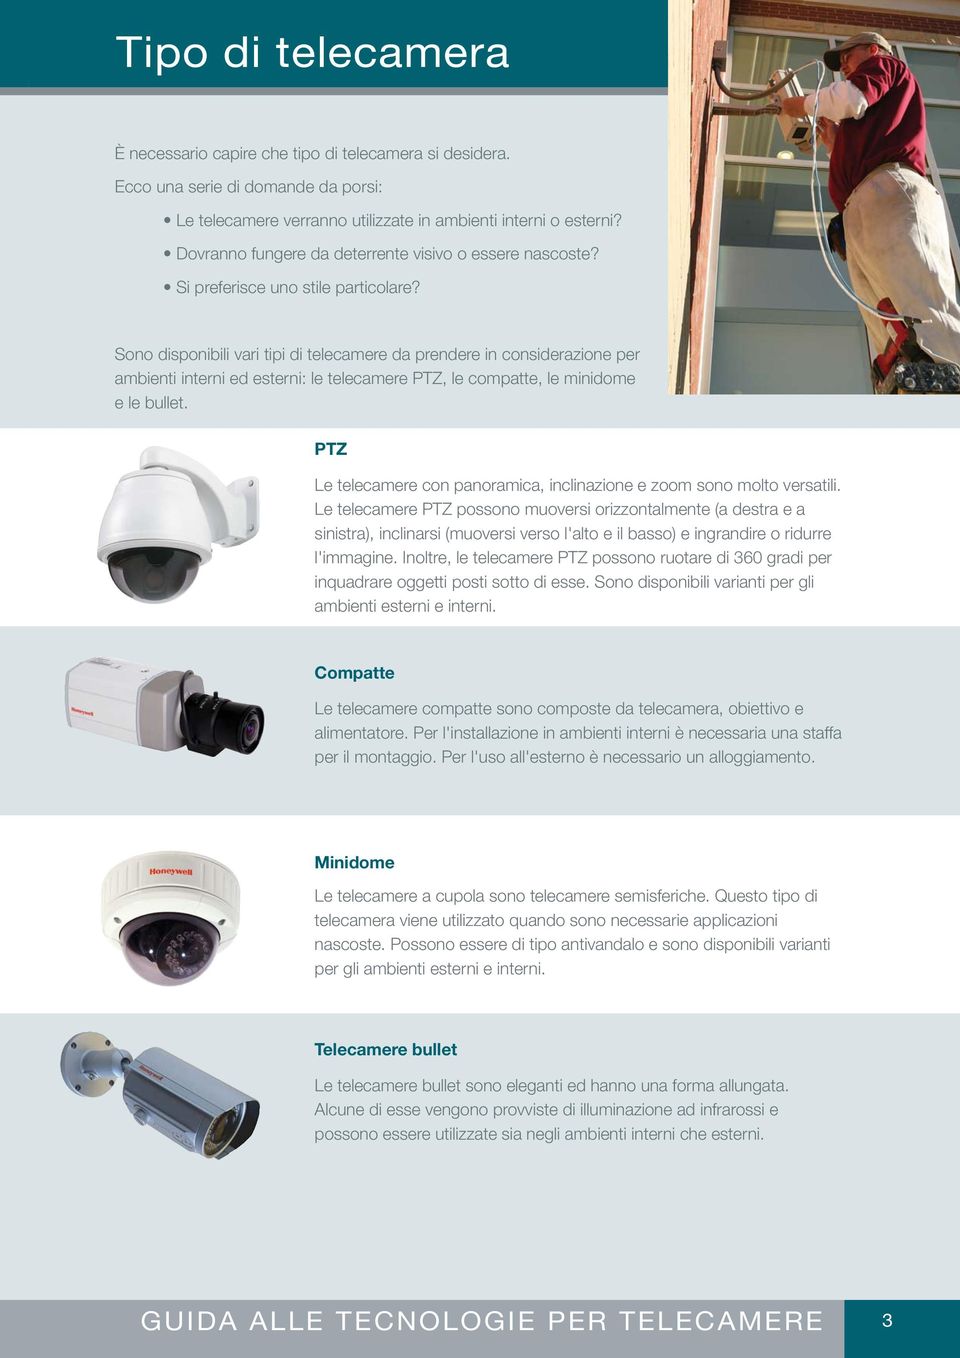 Sono disponibili vari tipi di telecamere da prendere in considerazione per ambienti interni ed esterni: le telecamere PTZ, le compatte, le minidome e le bullet.